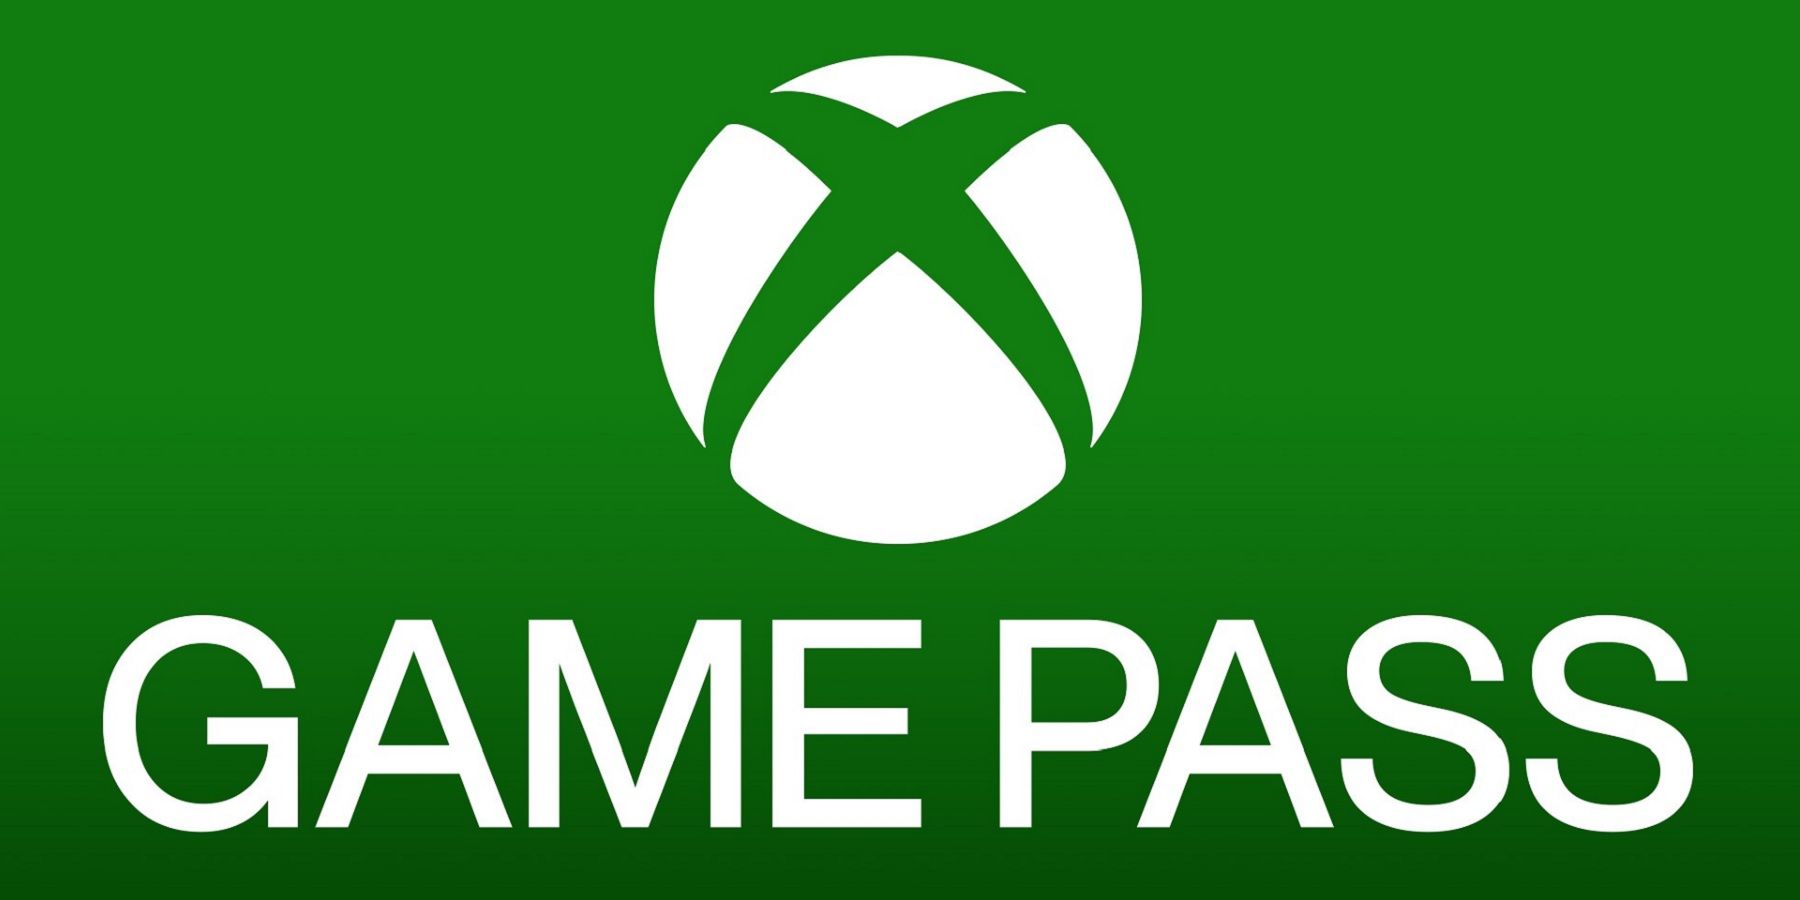 Xbox Game Pass terá LEGO Star Wars, Hello Heighbor 2 e mais em dezembro